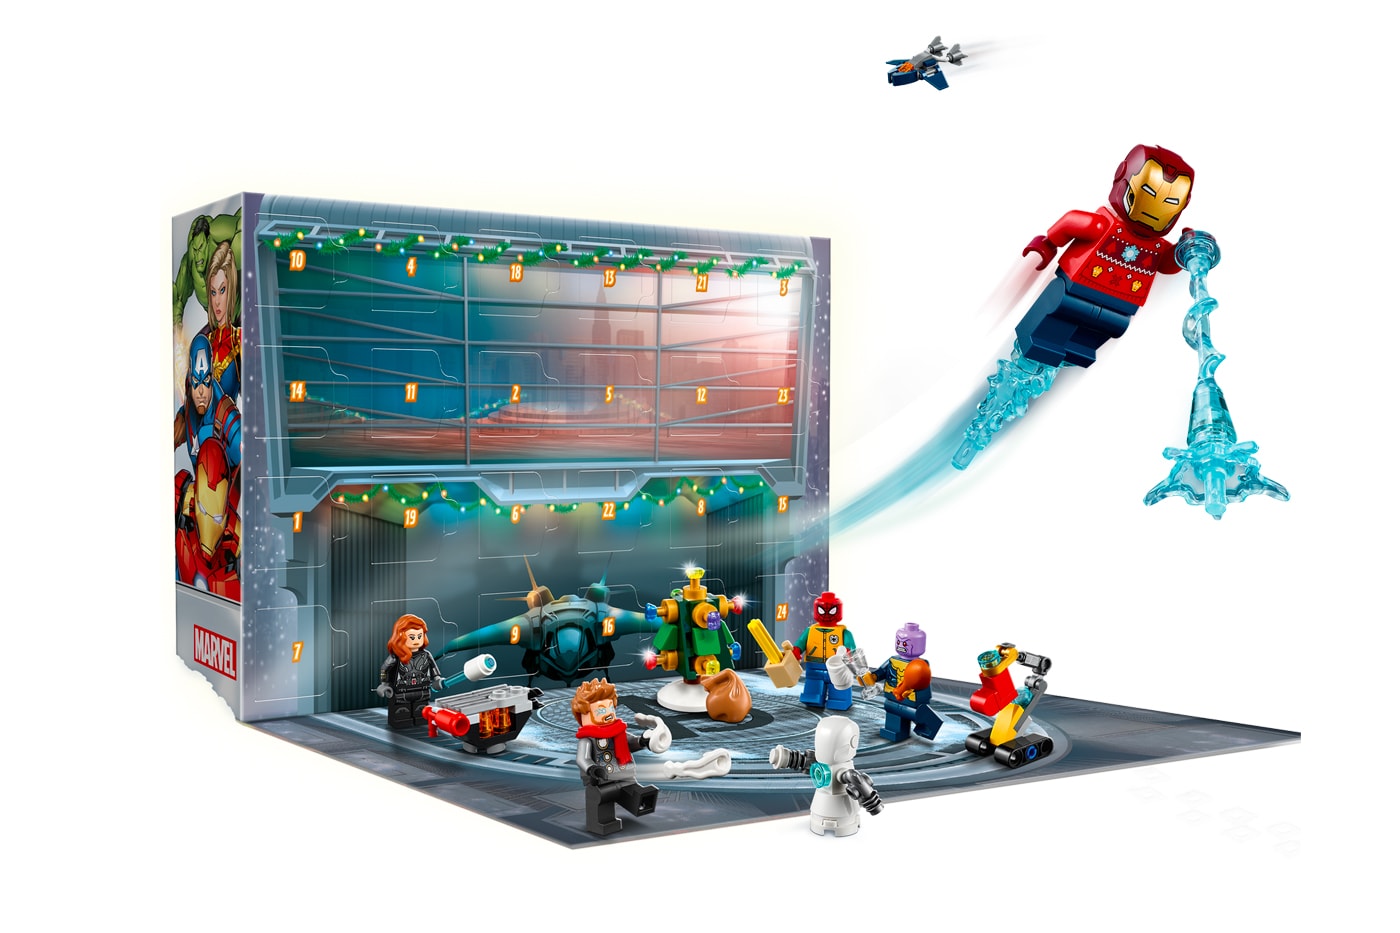 レゴ®が『アベンジャーズ』シリーズのアドベントカレンダーを発表 Marvel LEGO The Avengers Advent Calendar release Iron Man Spider-Man Black Widow Thor Captain Marvel Thanos Nick Fury toys 